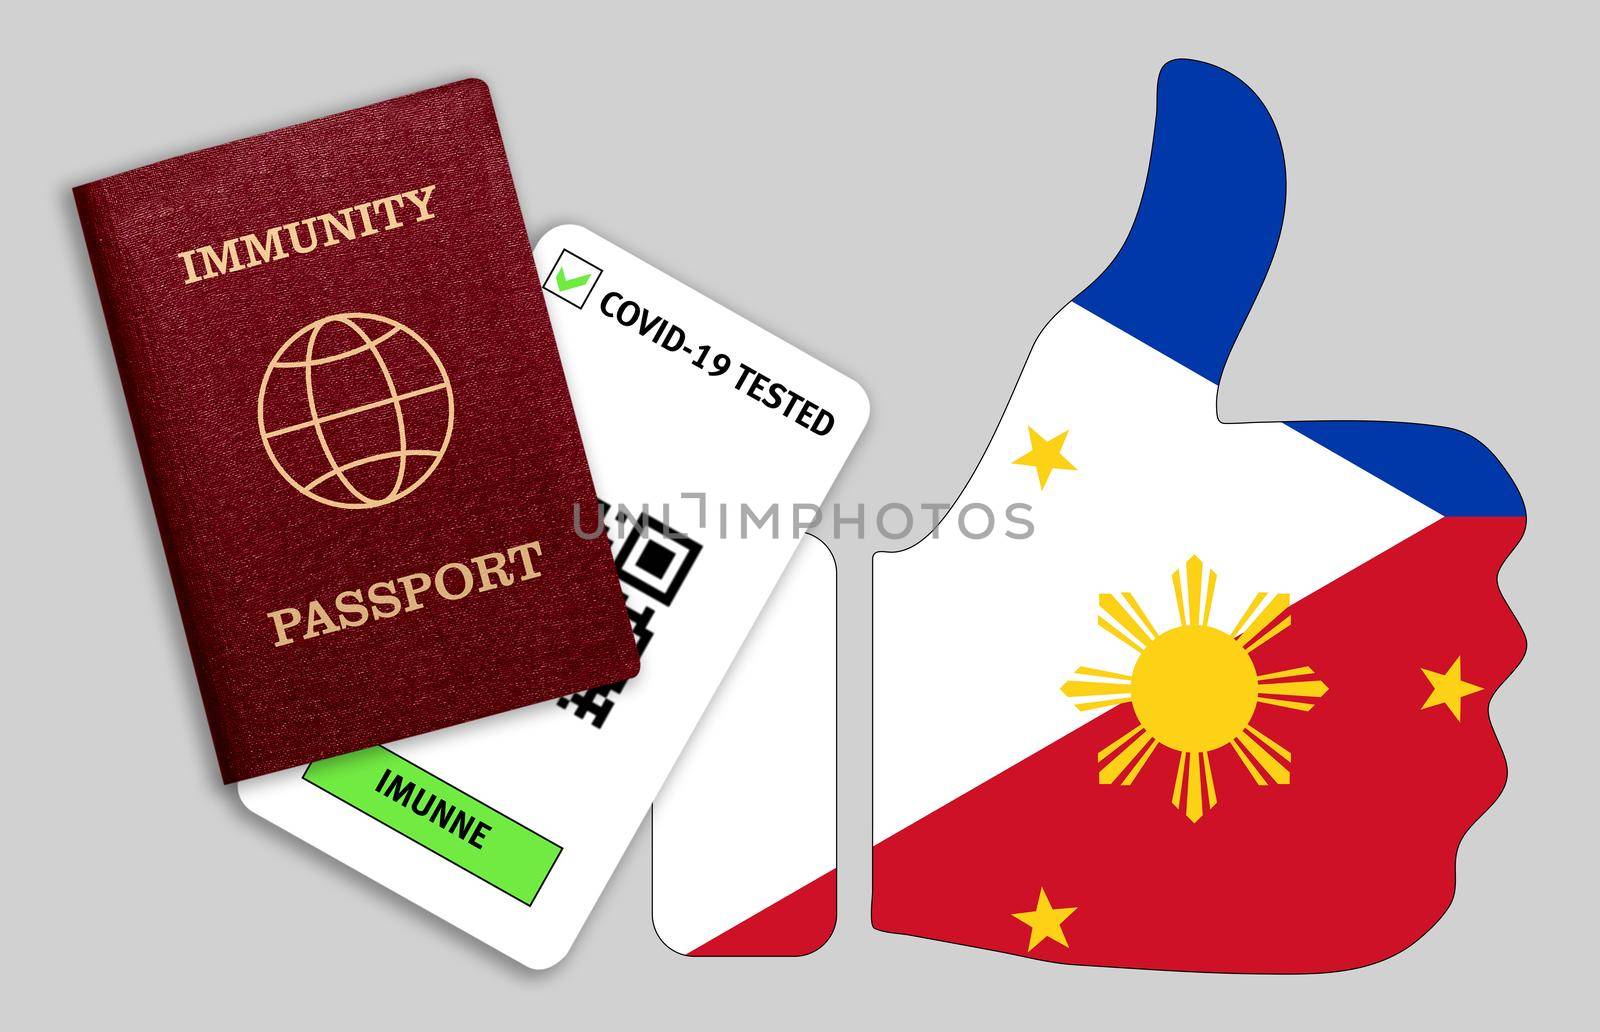 Immune passport and coronavirus test with thumb up with flag of Philippines by galinasharapova